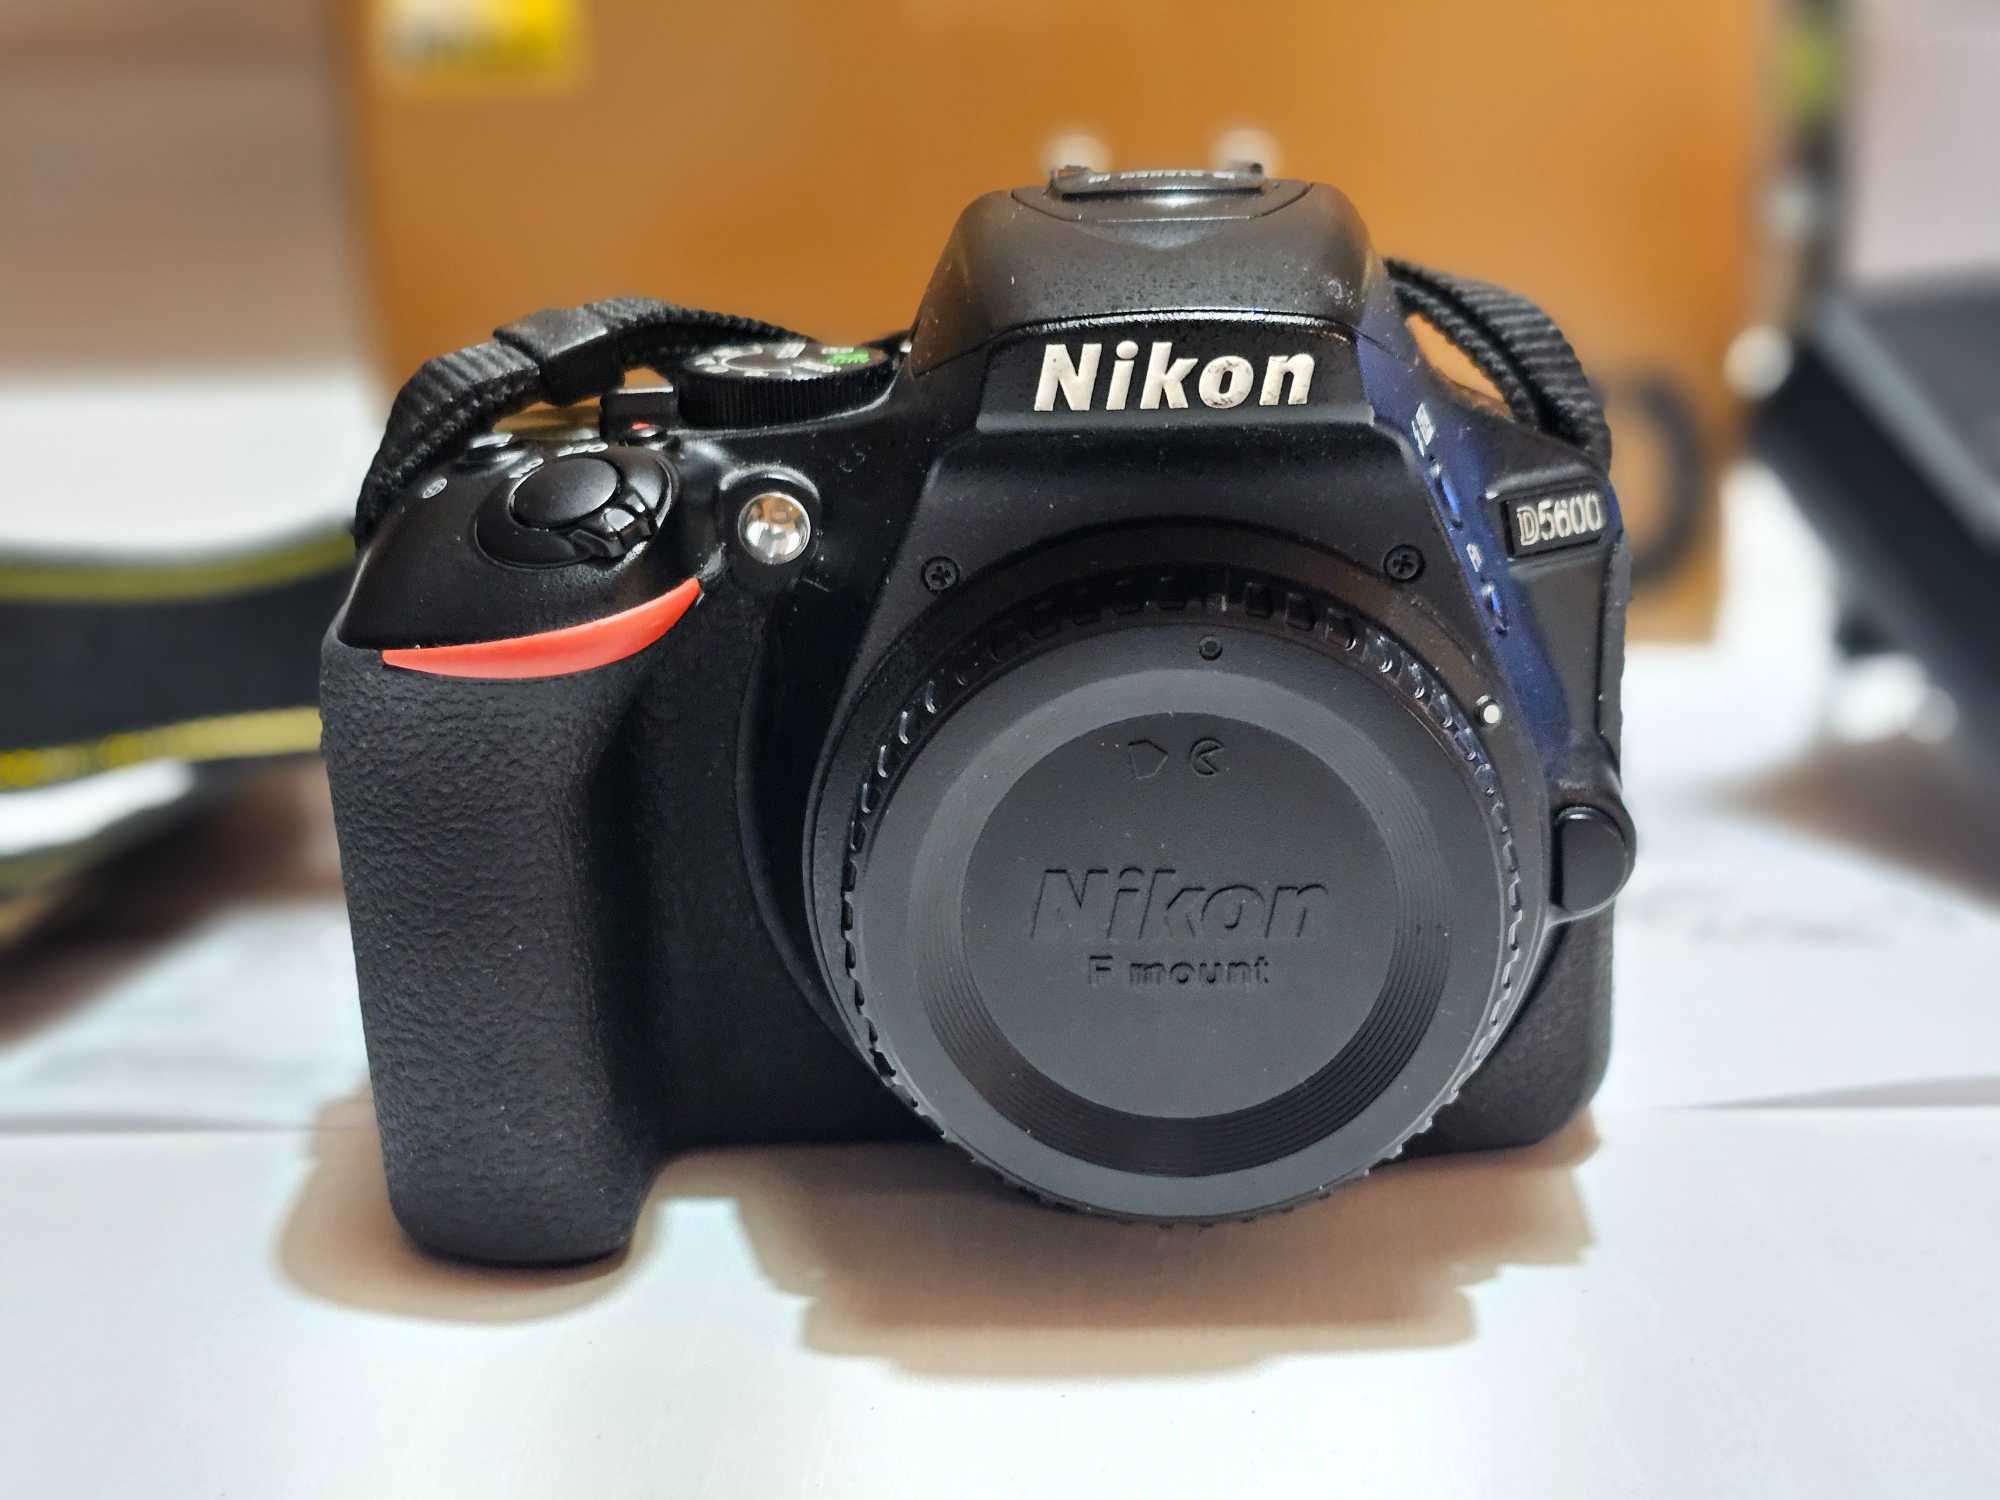 Lustrzanka Nikon D5600 zestaw okazja najtaniej torba mały przebieg